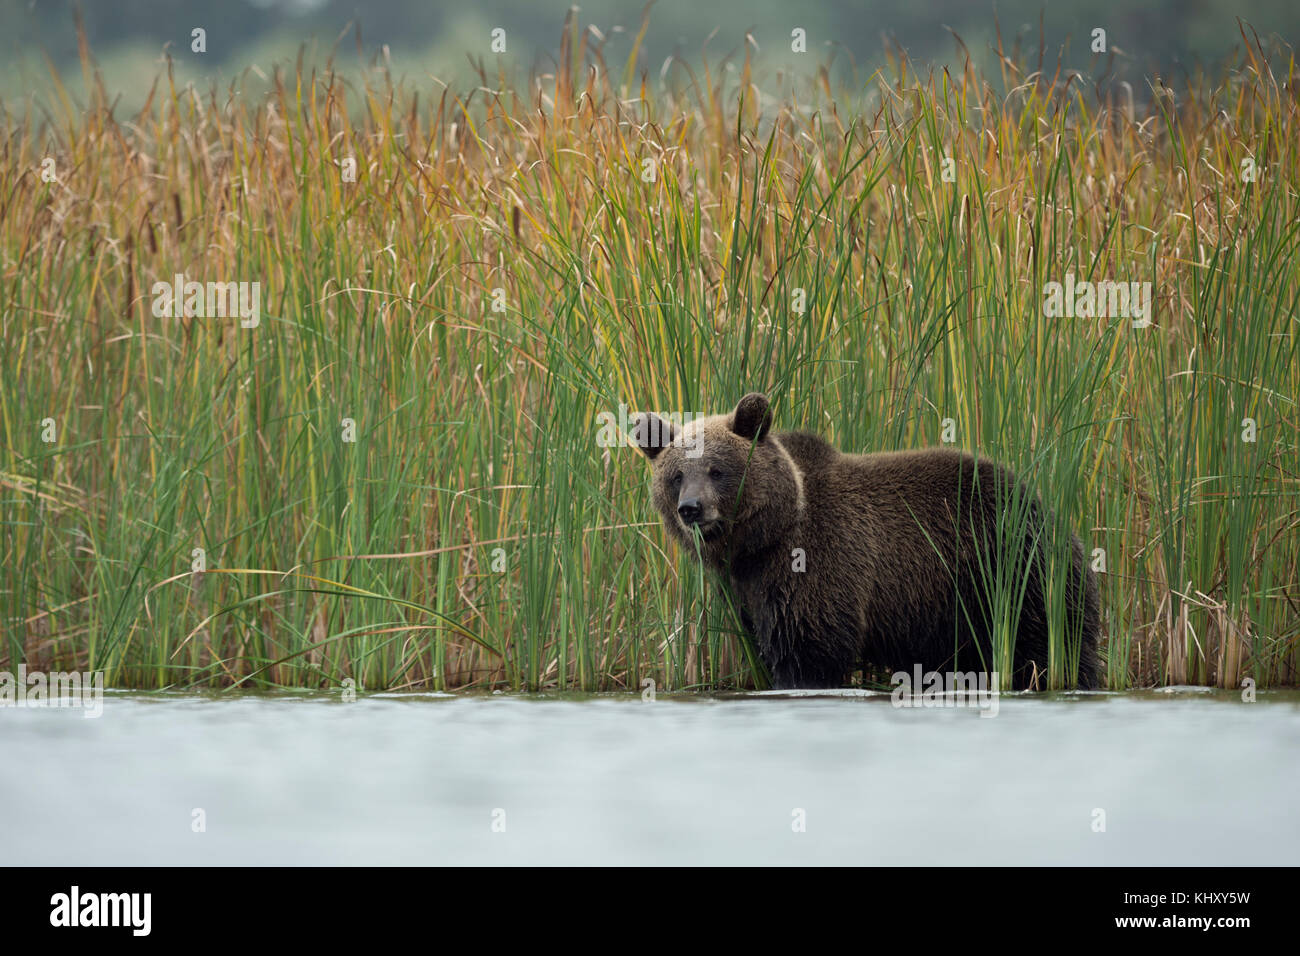 Ours brun ( Ursus arctos ), jeune cub, adolescent, debout dans l'eau peu profonde entre les roseau de couleur automnale, se nourrissant sur l'herbe, semble mignon, Europe. Banque D'Images